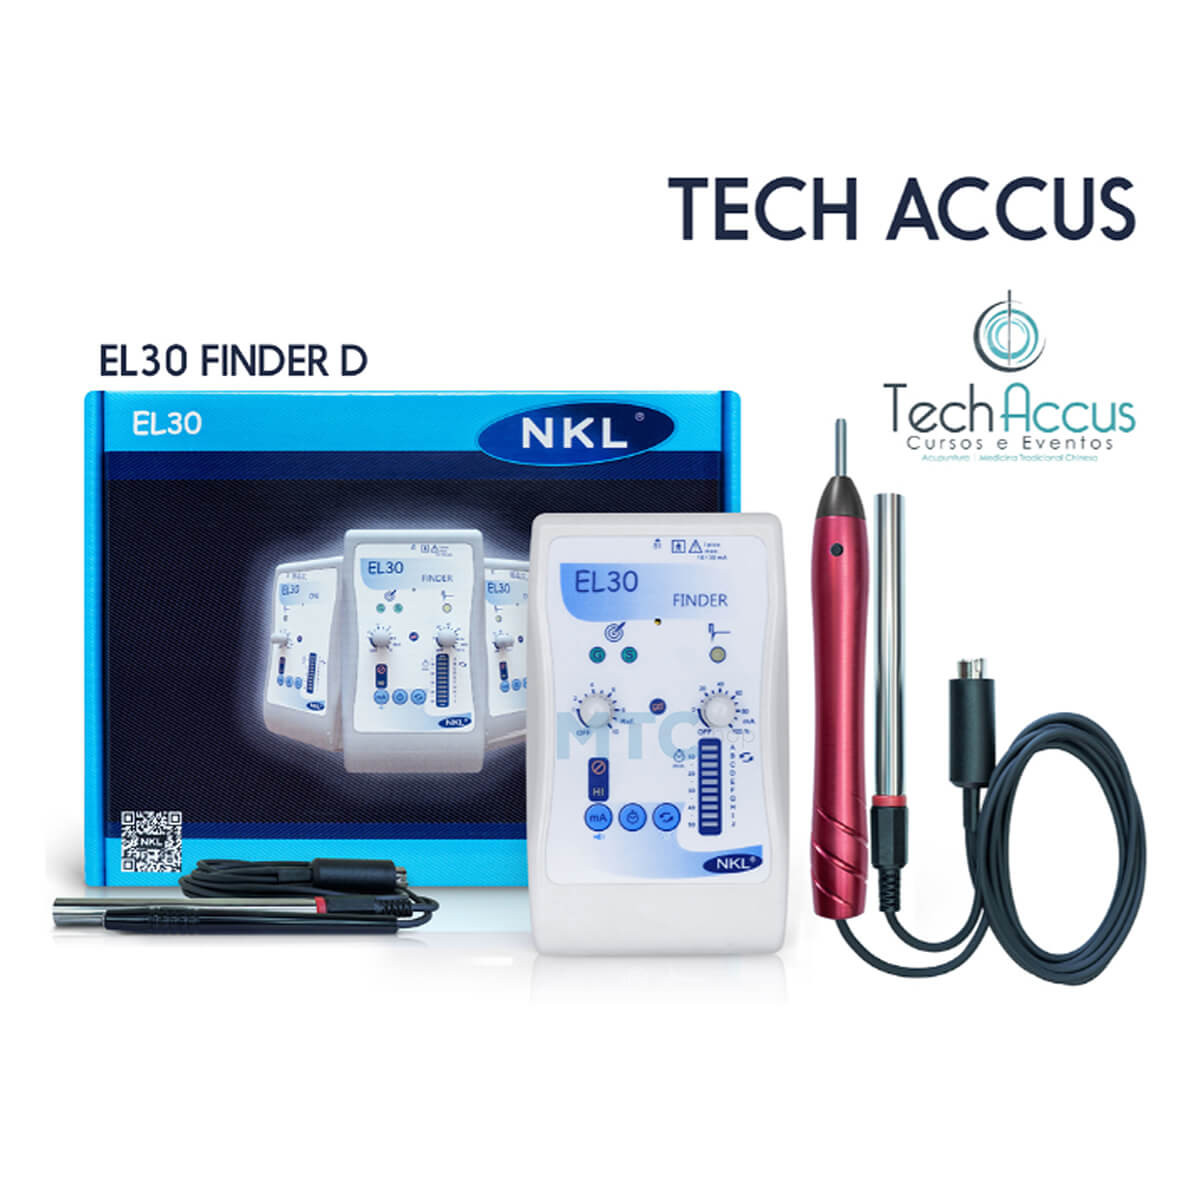 EL30 Finder Eletroestimulador Tabela TechAccus - NKL